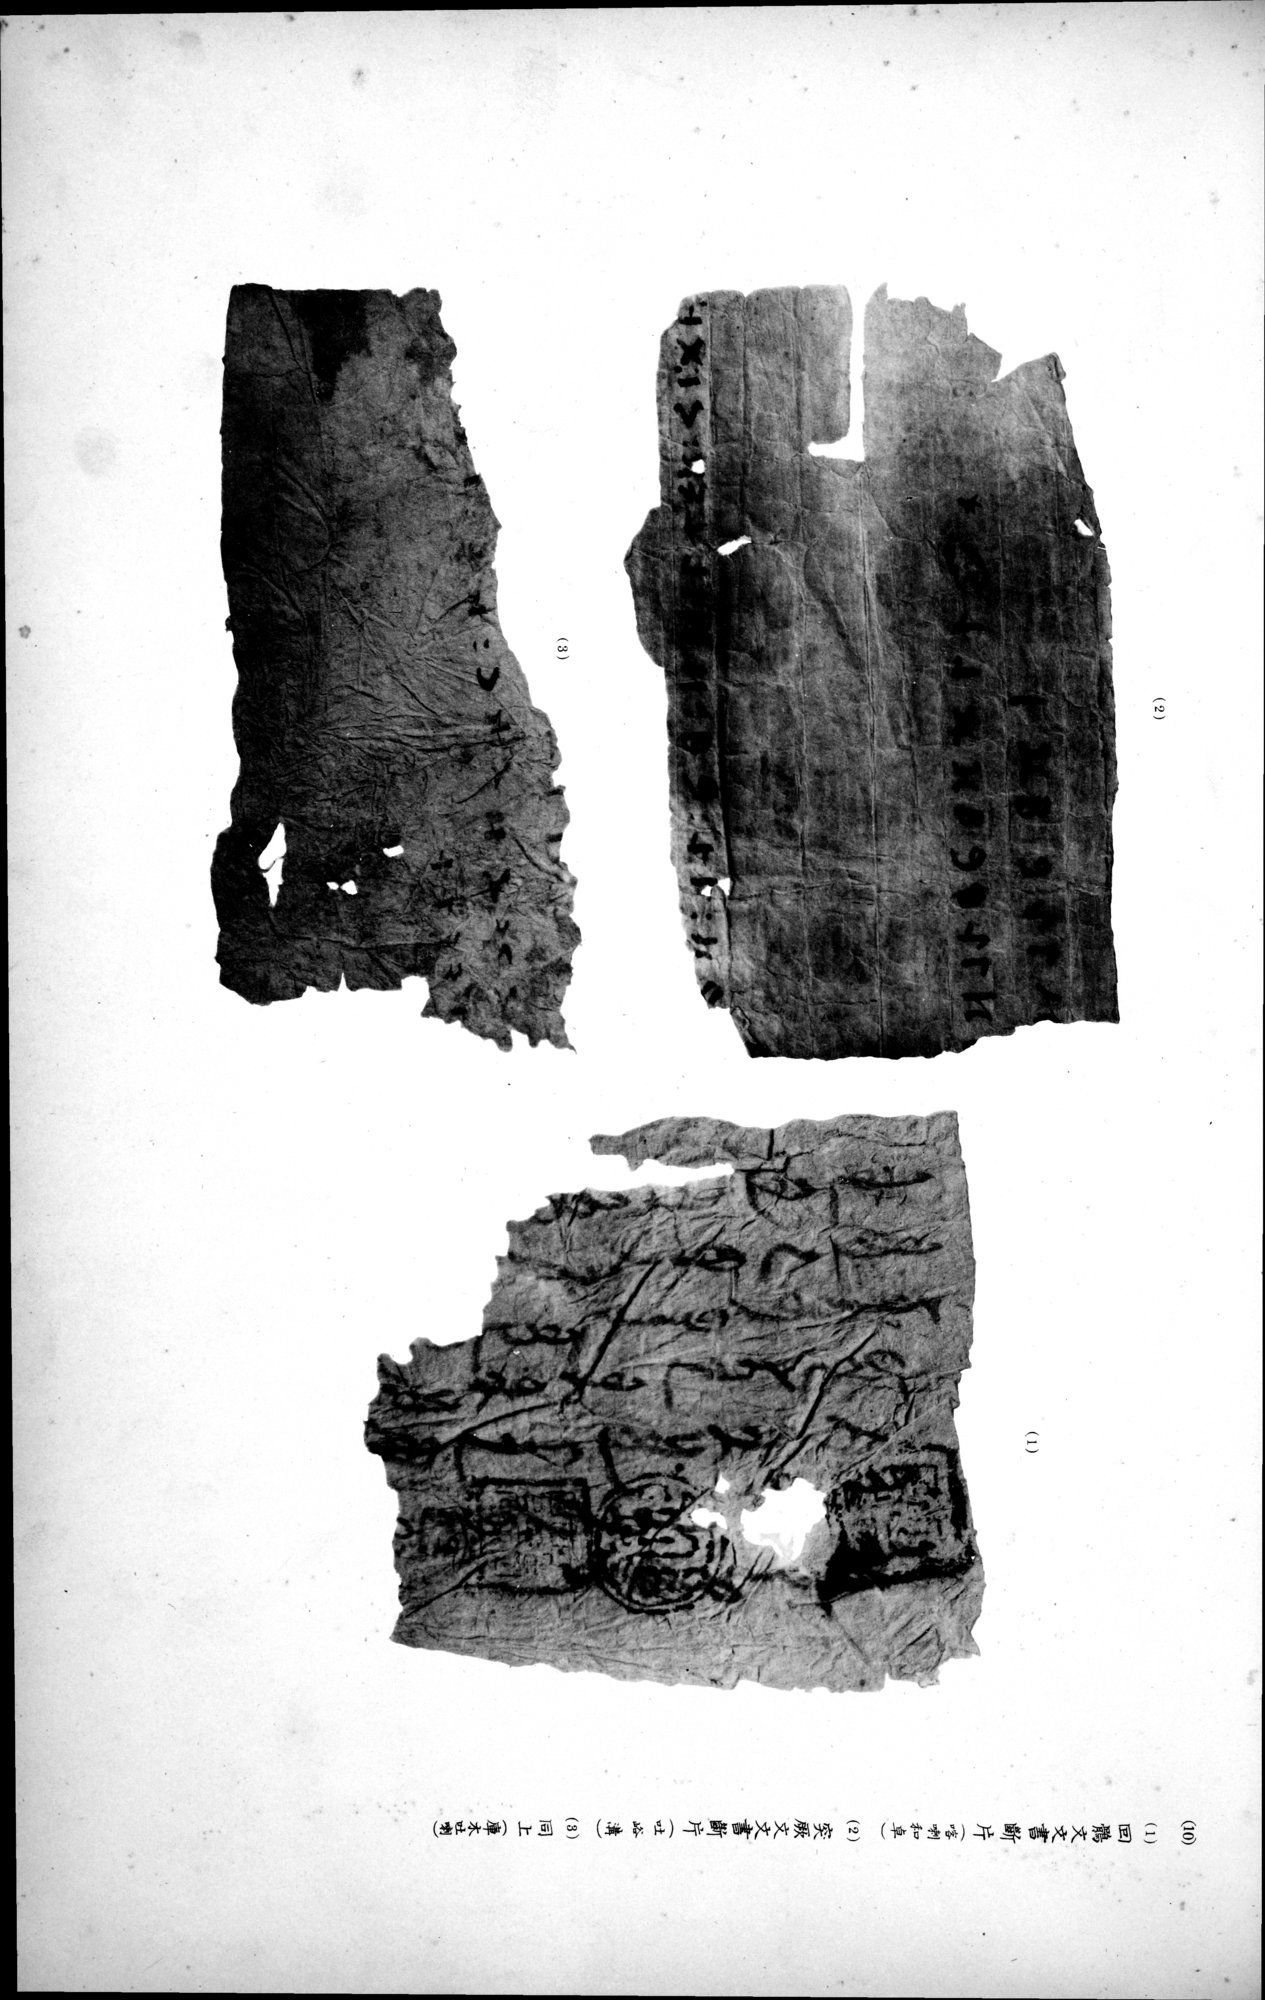 西域考古図譜 : vol.2 / Page 273 (Grayscale High Resolution Image)